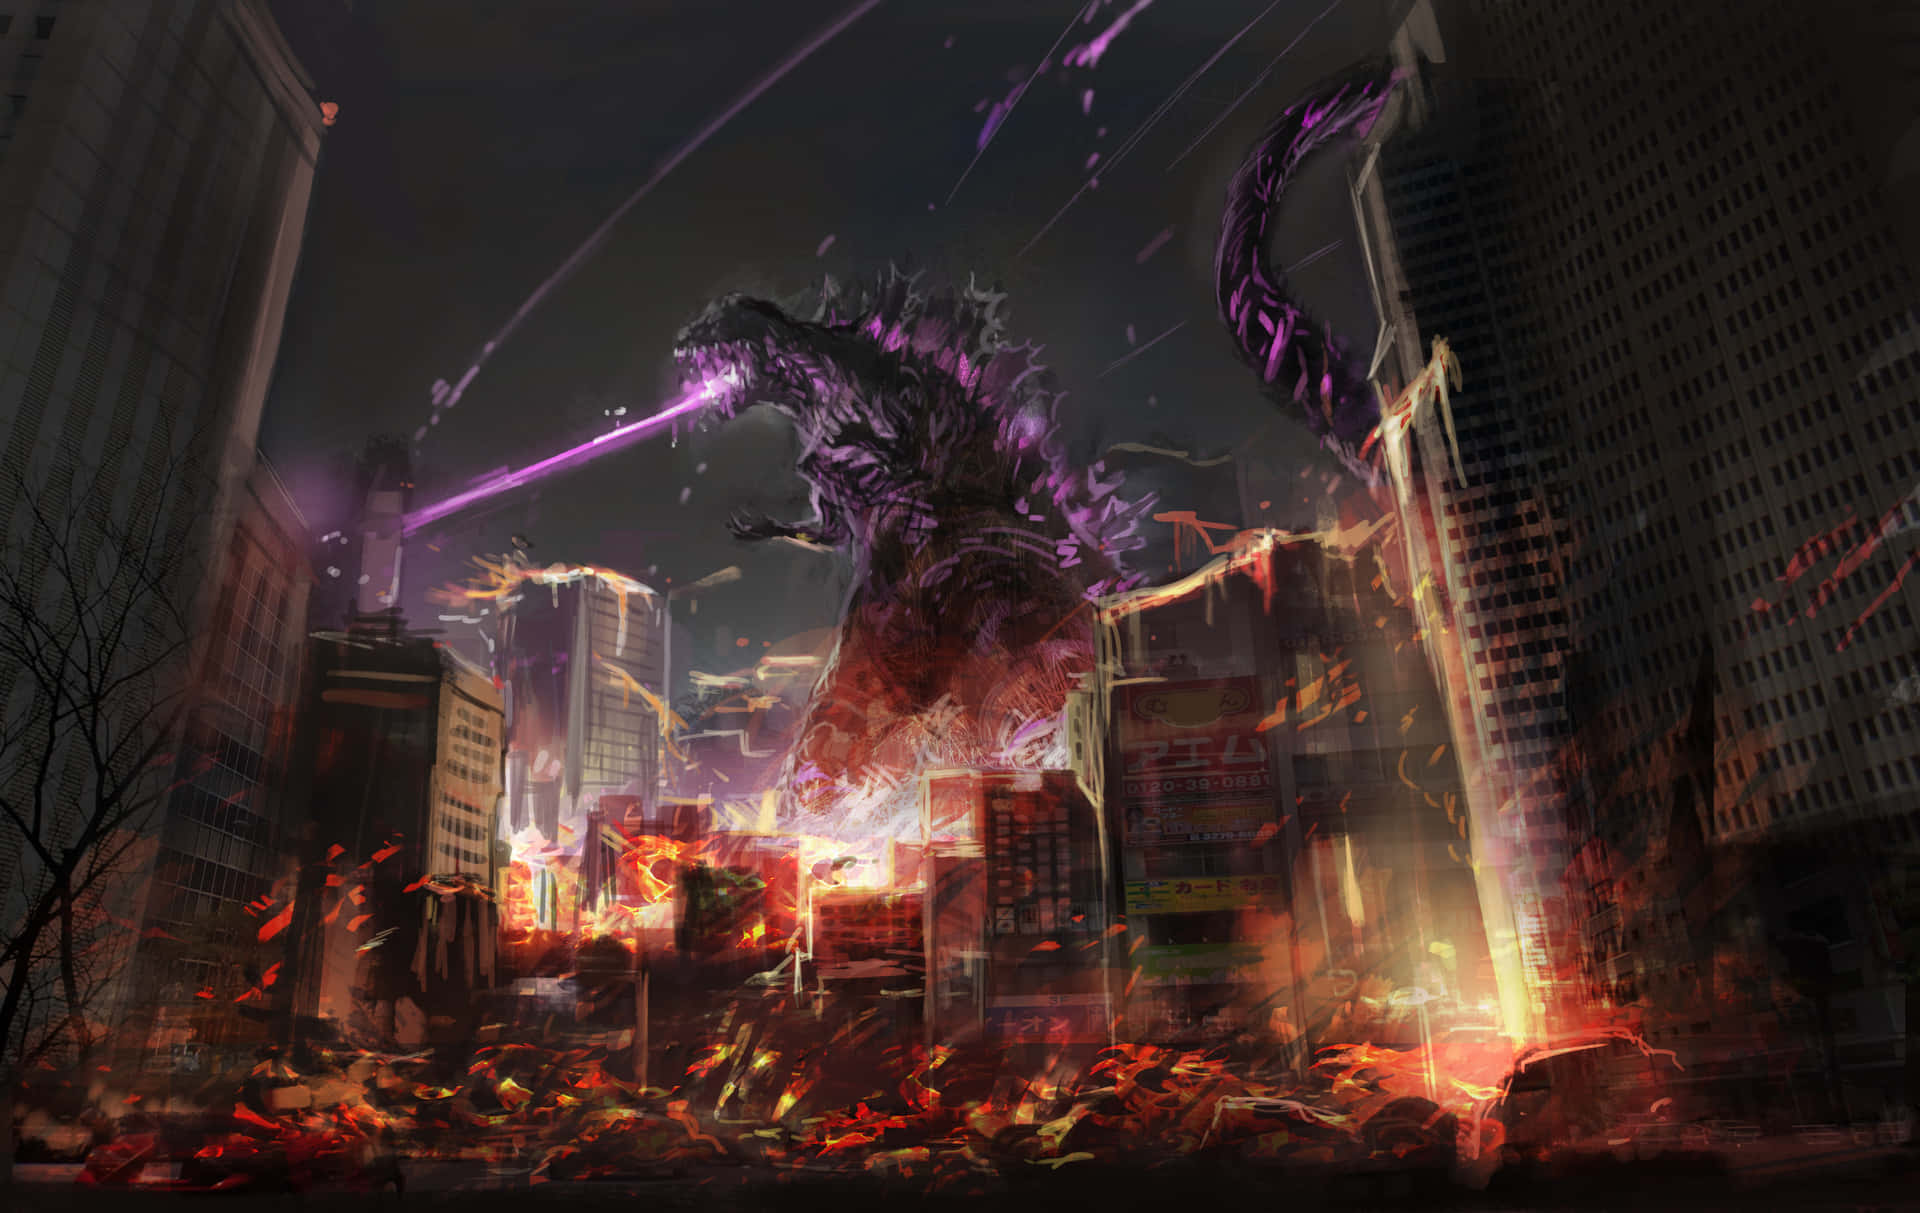 Imagende Godzilla Disparando Rayos Láser Púrpuras En Una Ciudad En Llamas.